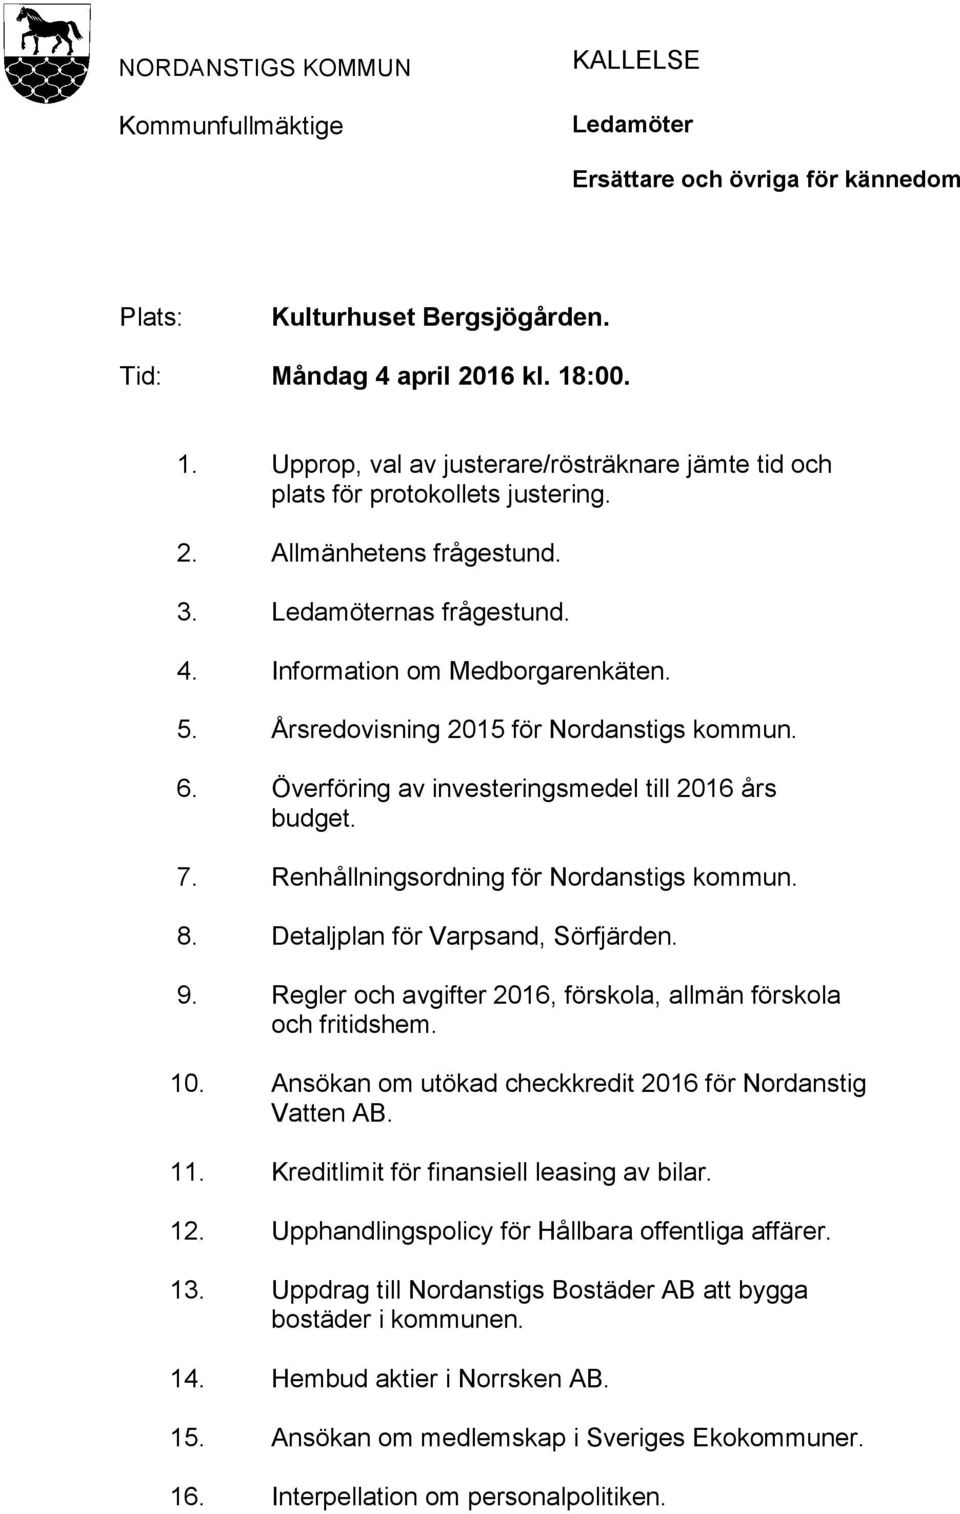 Årsredovisning 2015 för Nordanstigs kommun. 6. Överföring av investeringsmedel till 2016 års budget. 7. Renhållningsordning för Nordanstigs kommun. 8. Detaljplan för Varpsand, Sörfjärden. 9.